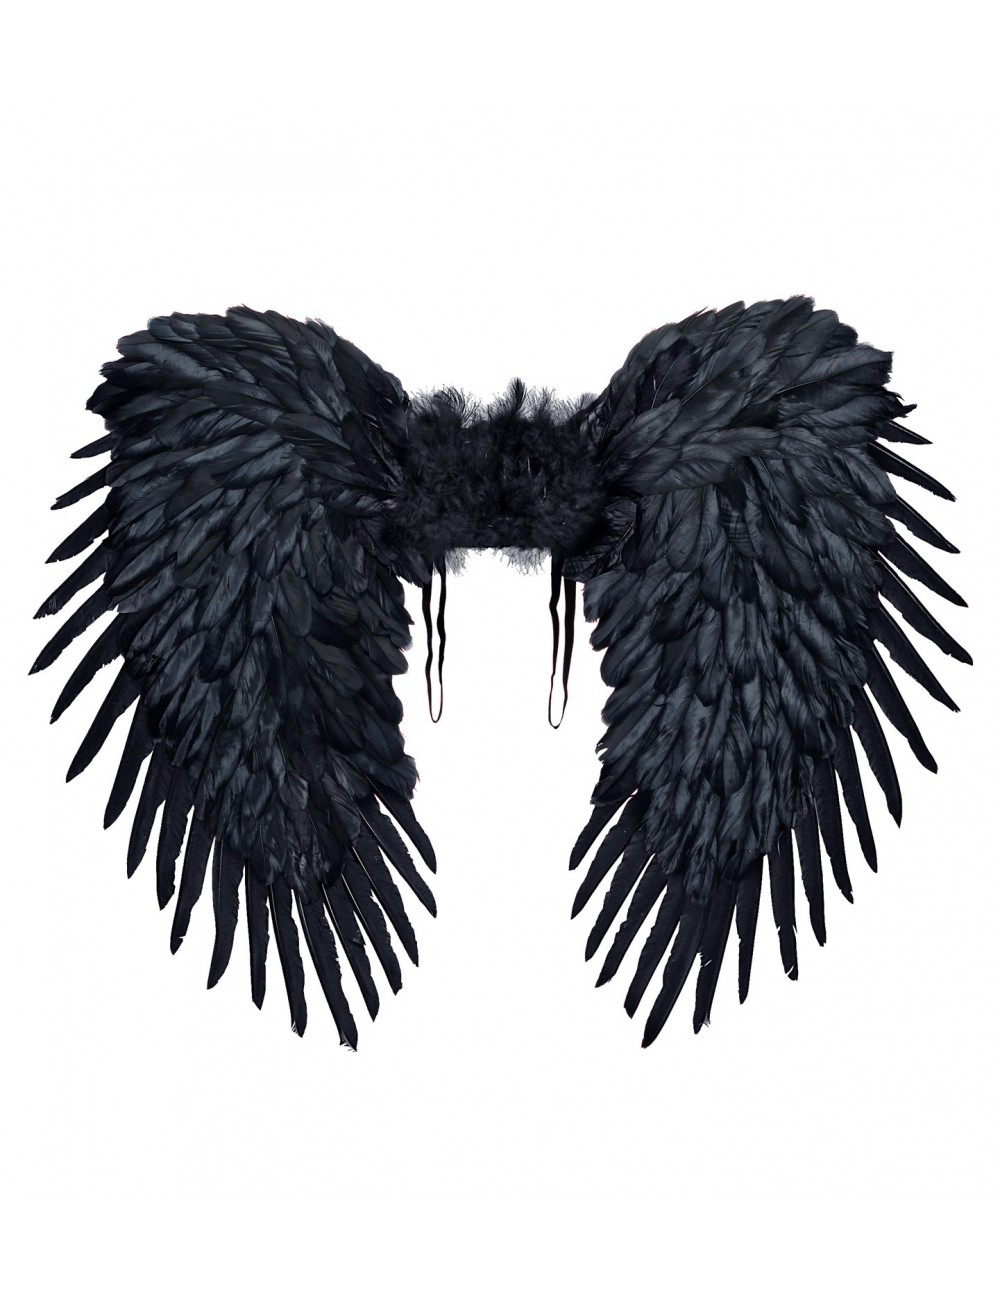 Paar schwarze Flügel Illustration, Flügel, schwarze Flügel, Engel